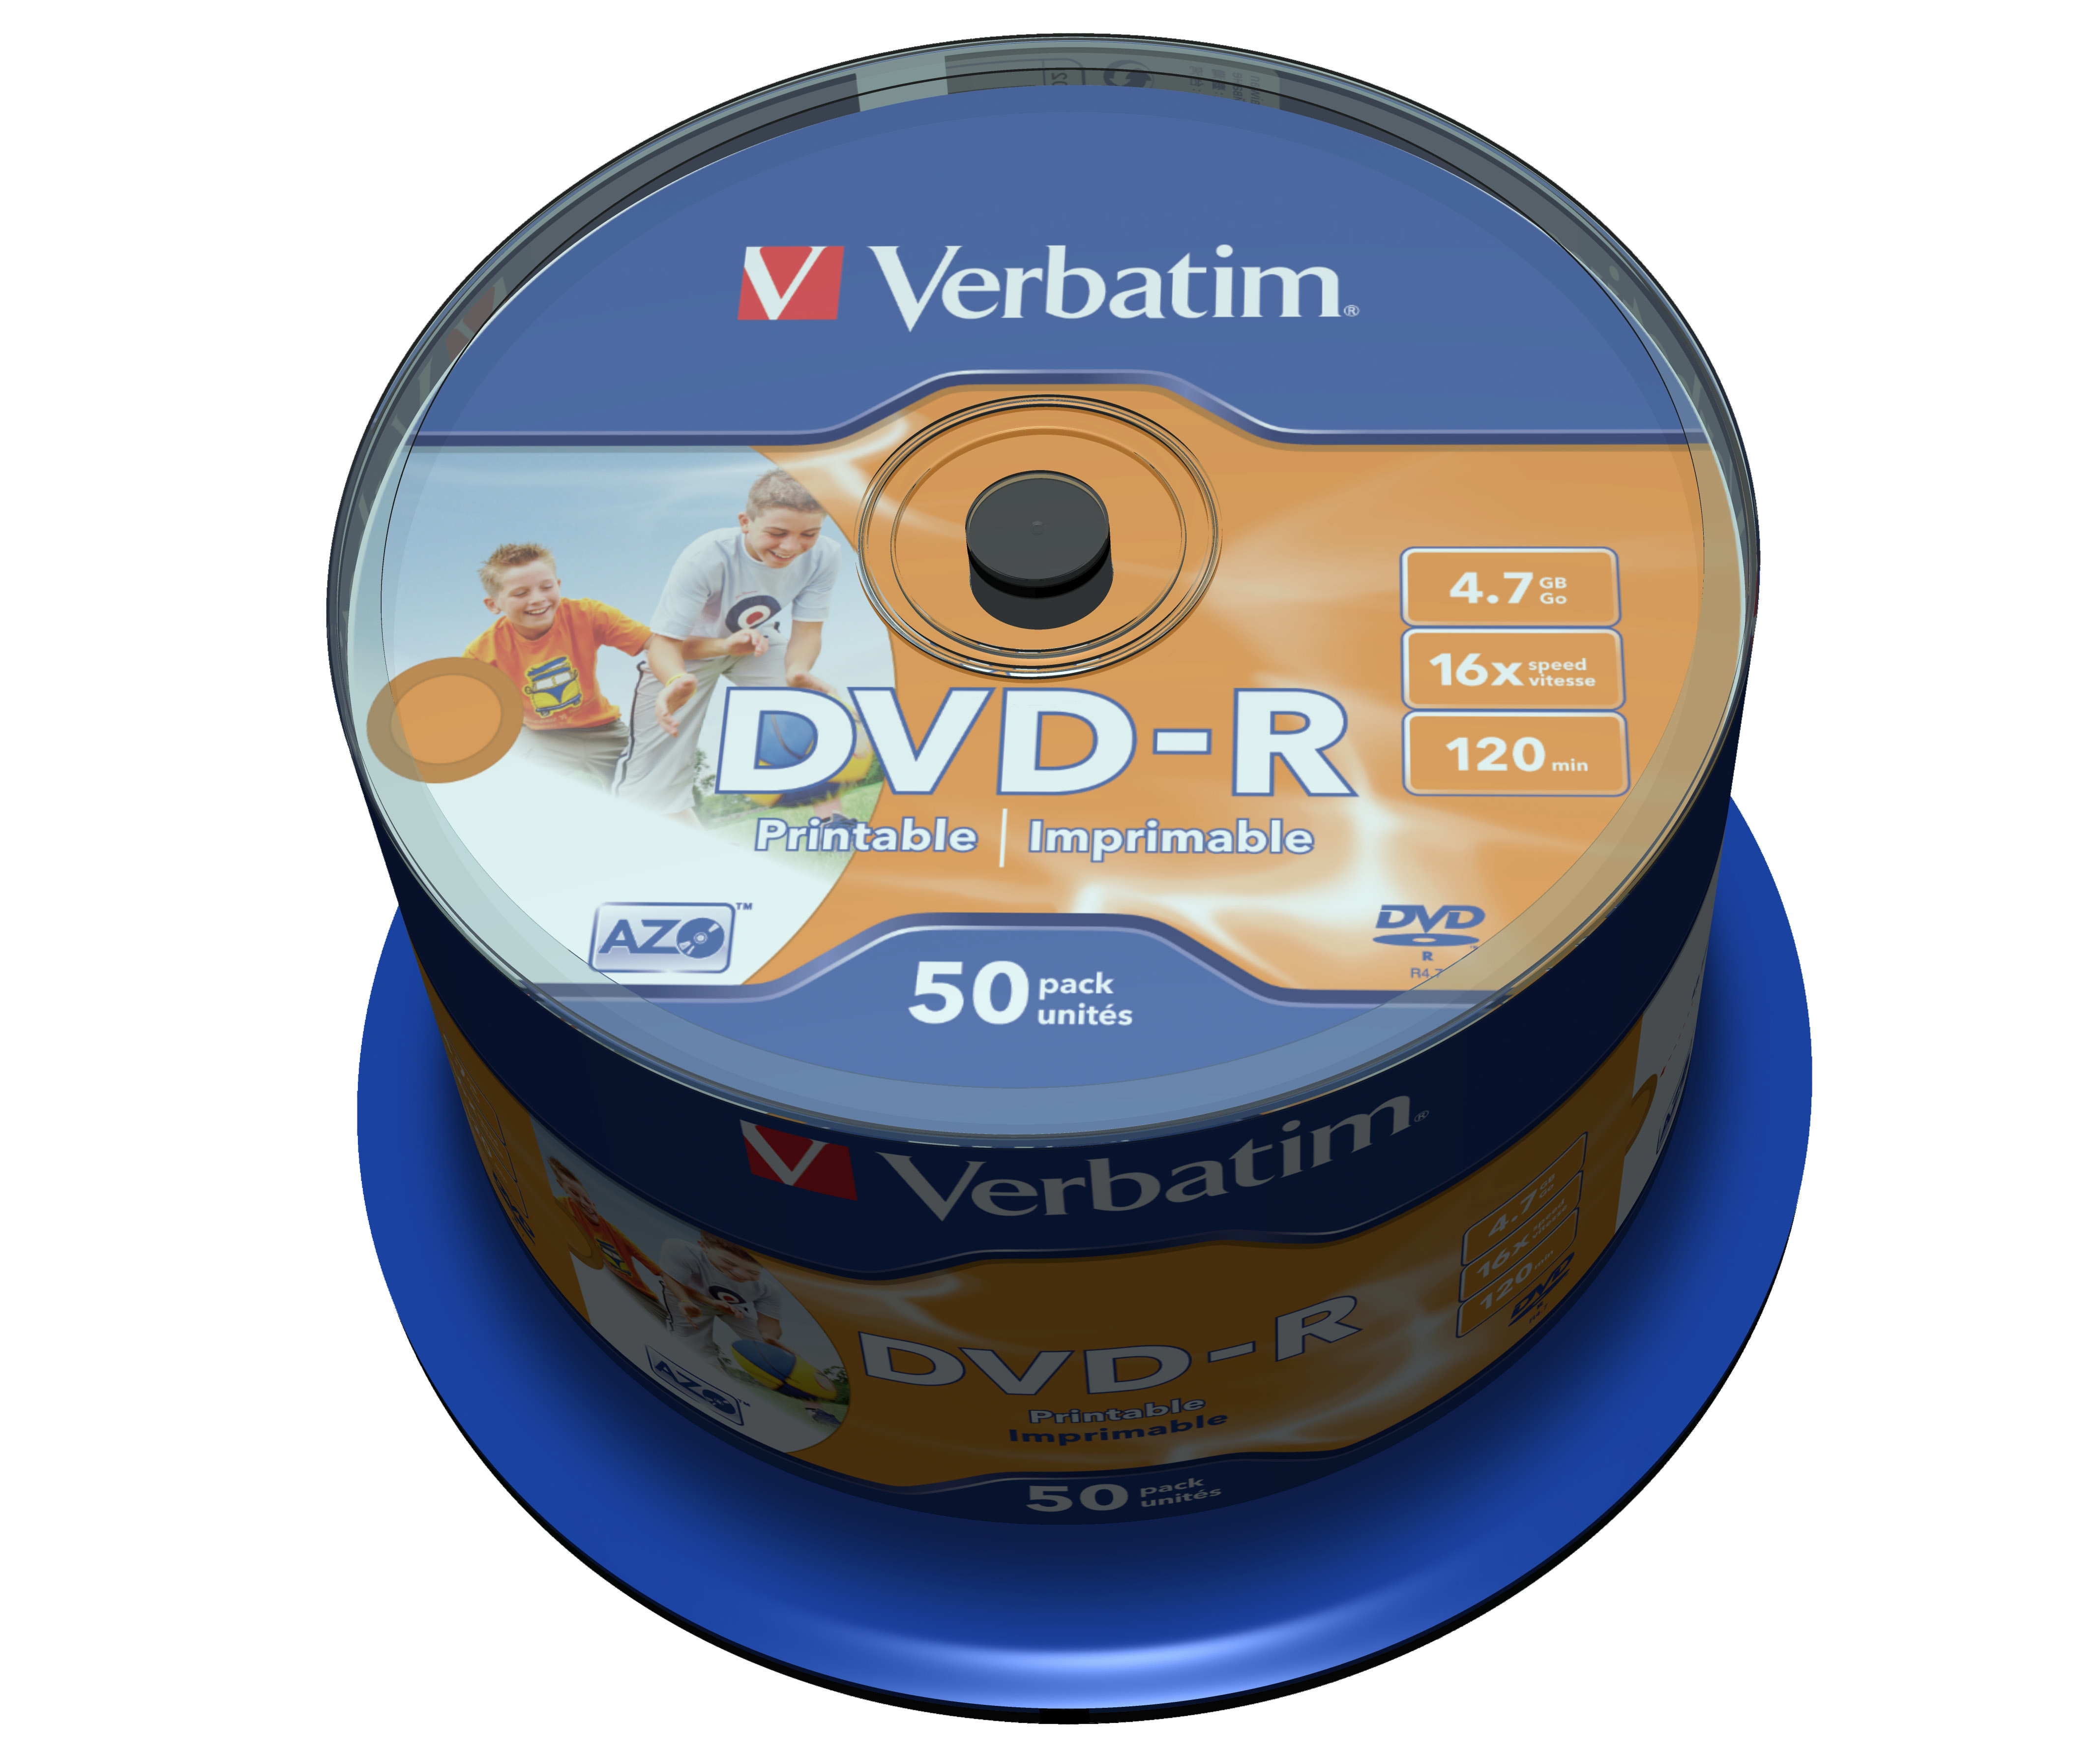 DVD-R Verbatim 4,7GB 50pcs Spin.WidePS 16x Non-ID